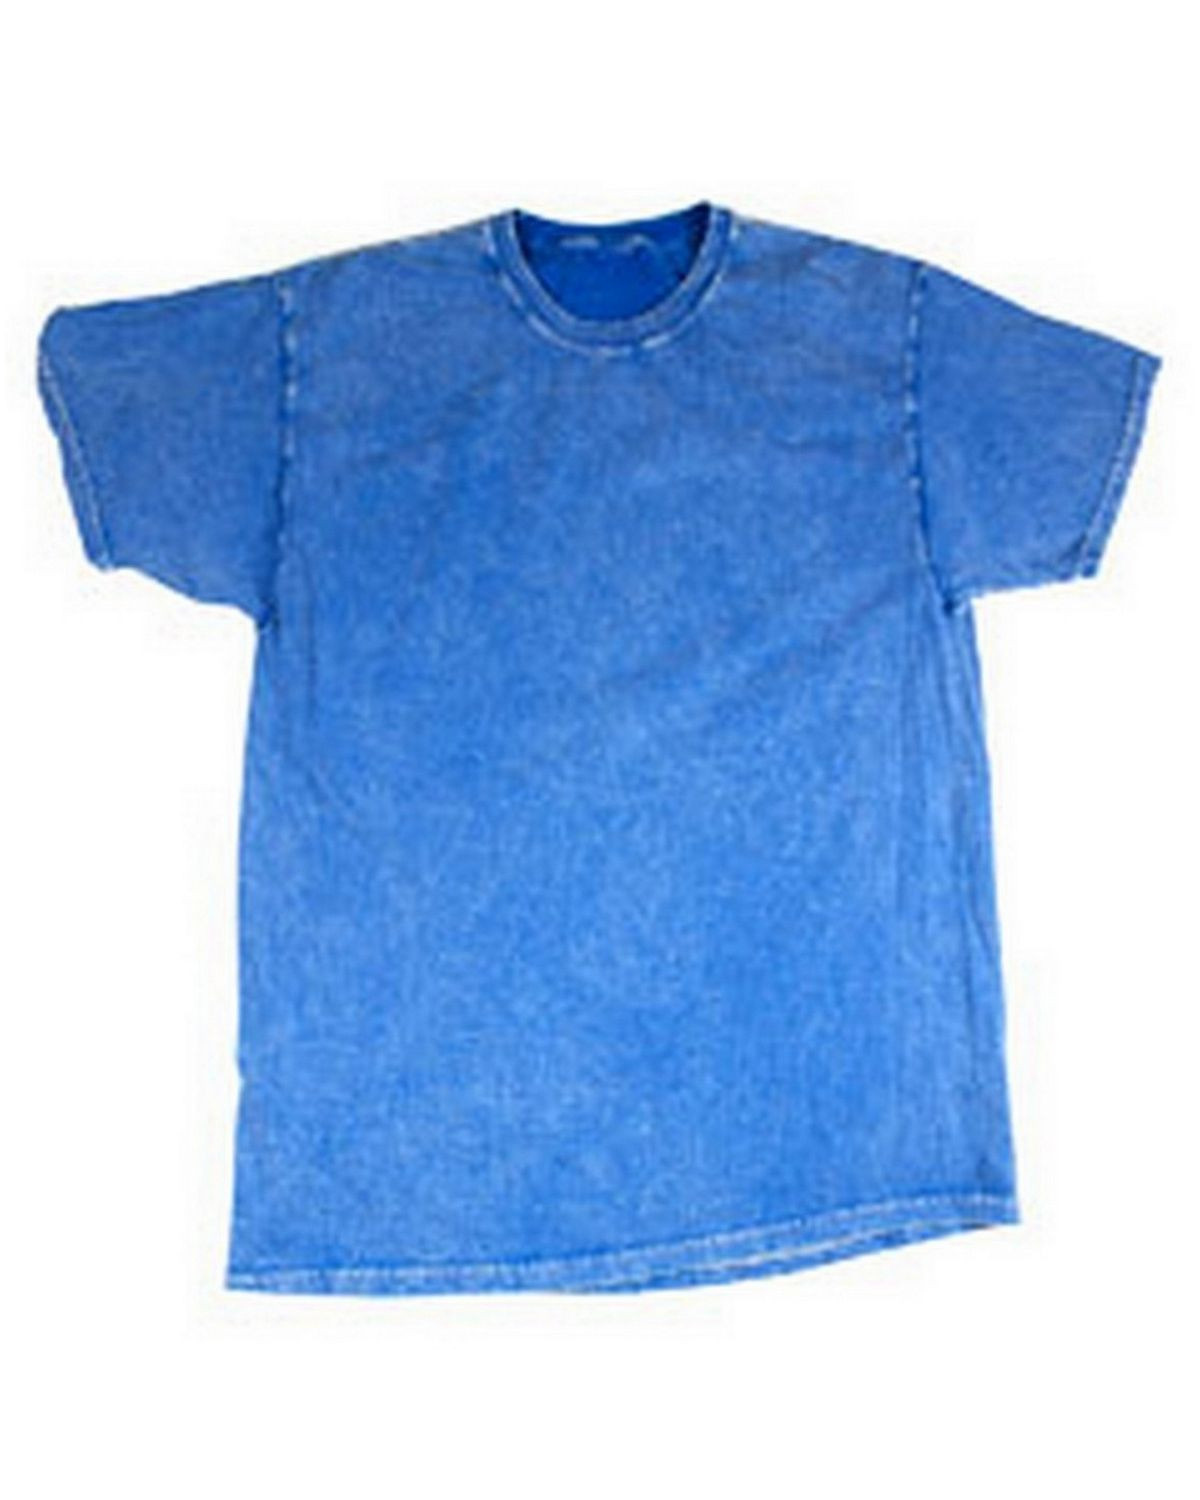 Tie-Dye CD1300 Men's Vintage Mineral Wash T-Shirt - Mineral Royal - S #vintage